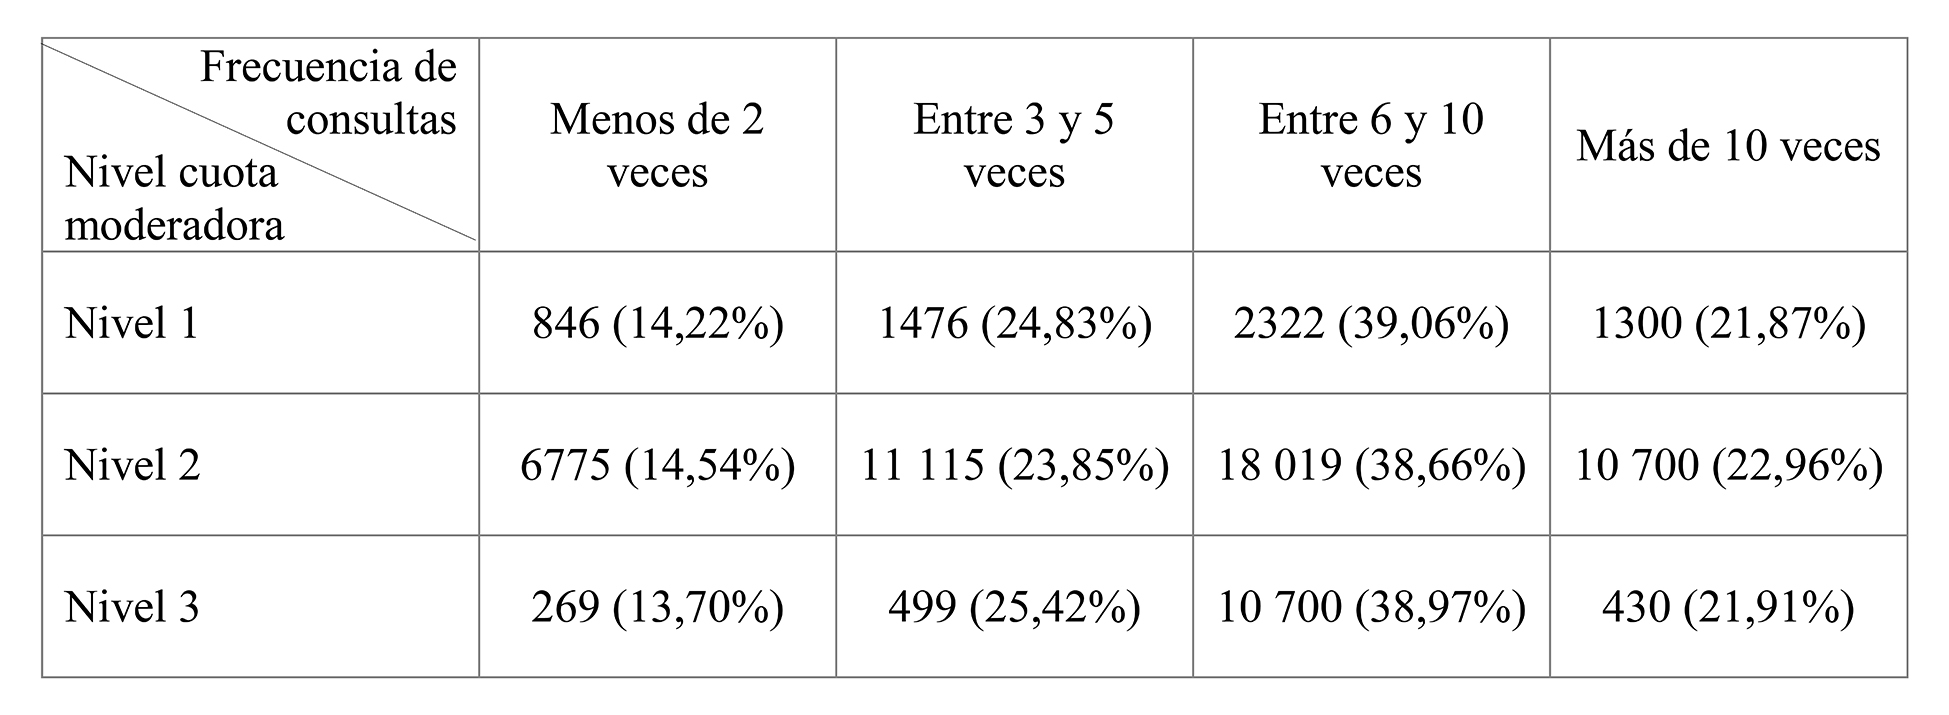 Frecuencia de consultas ambulatorias en la cohorte de pacientes asmáticos de 2013 según nivel de cuota moderadora